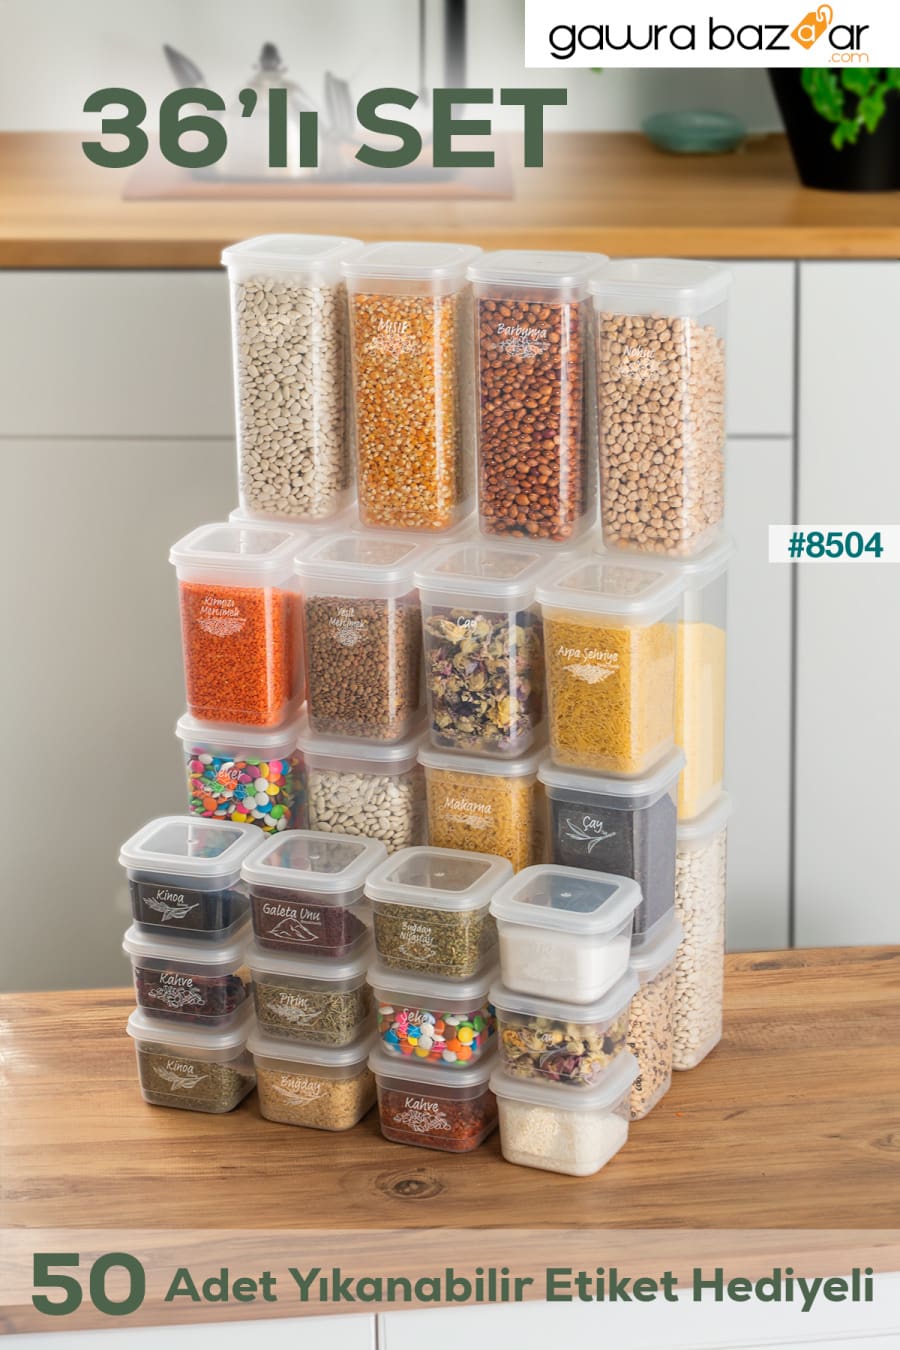 433-6 مجموعة حاويات تخزين التوابل المكونة من 36 قطعة مربعة من المواد الغذائية 12x(0.60+1.30+1.90) لتر شفاف Porsima 0